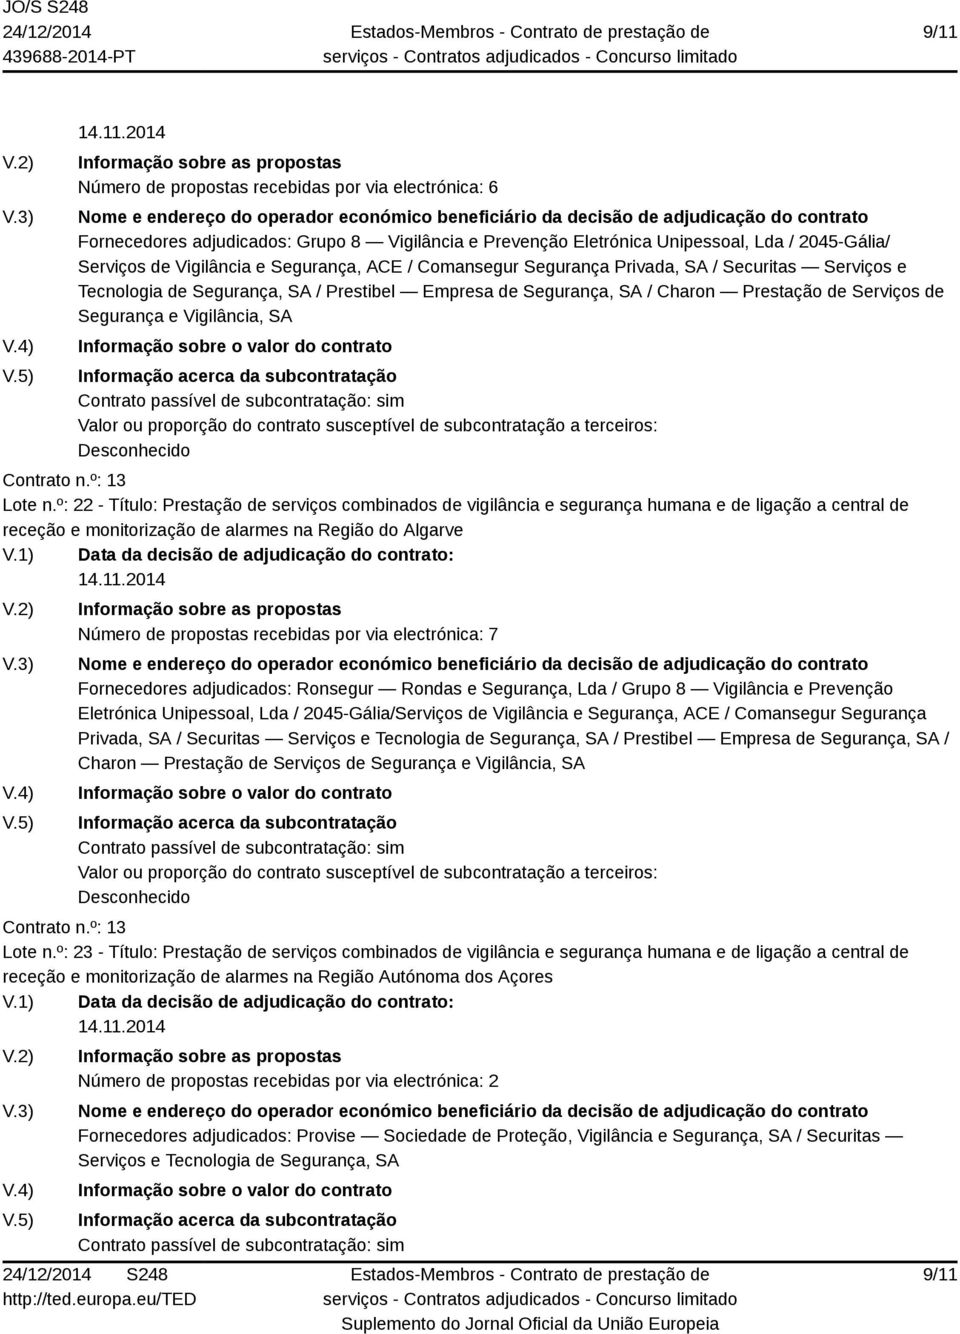 º: 22 - Título: Prestação de serviços combinados de vigilância e segurança humana e de ligação a central de receção e monitorização de alarmes na Região do Algarve Número de propostas recebidas por